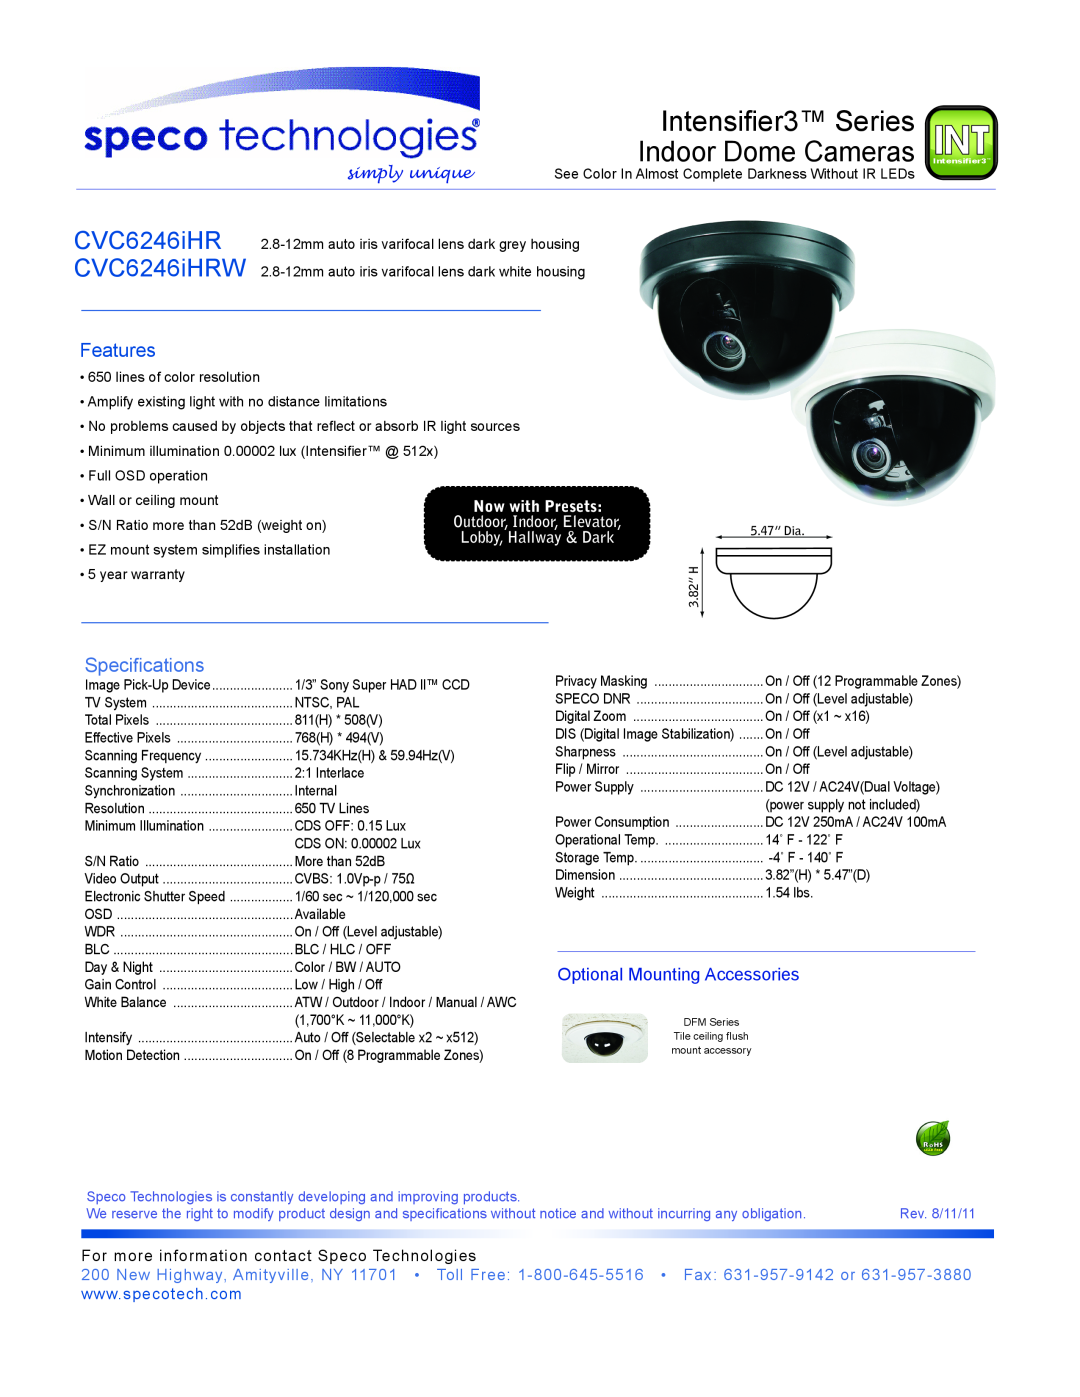 Speco Technologies CVC6246IHRW warranty Intensifier3 Series, Indoor Dome Cameras, CVC6246iHR CVC6246iHRW, Features 